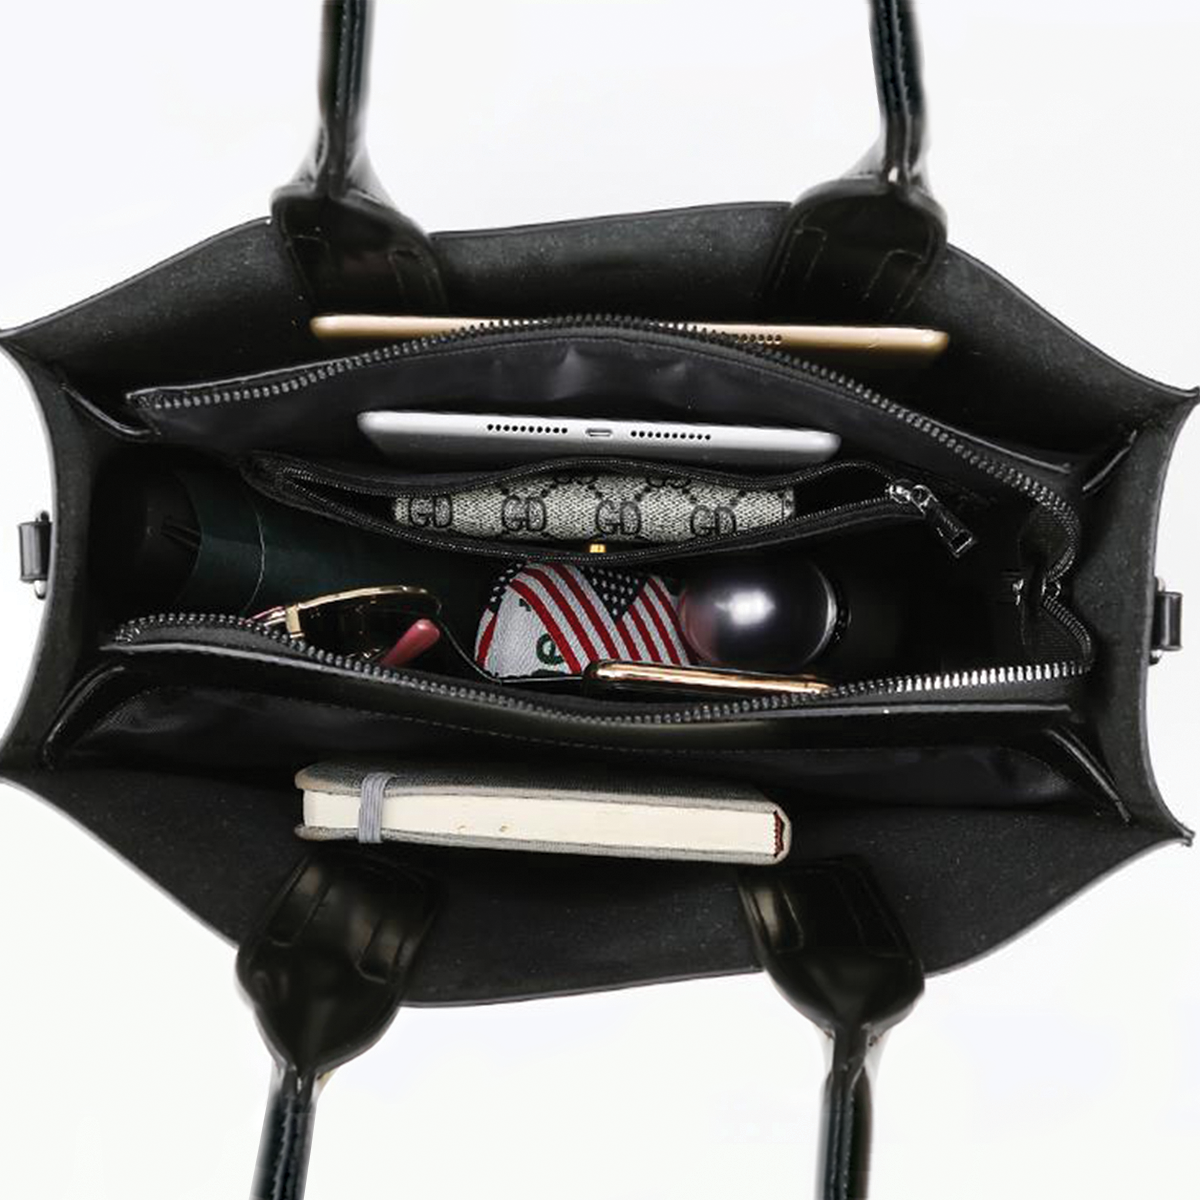 Goldendoodle Luxury Handbag V2